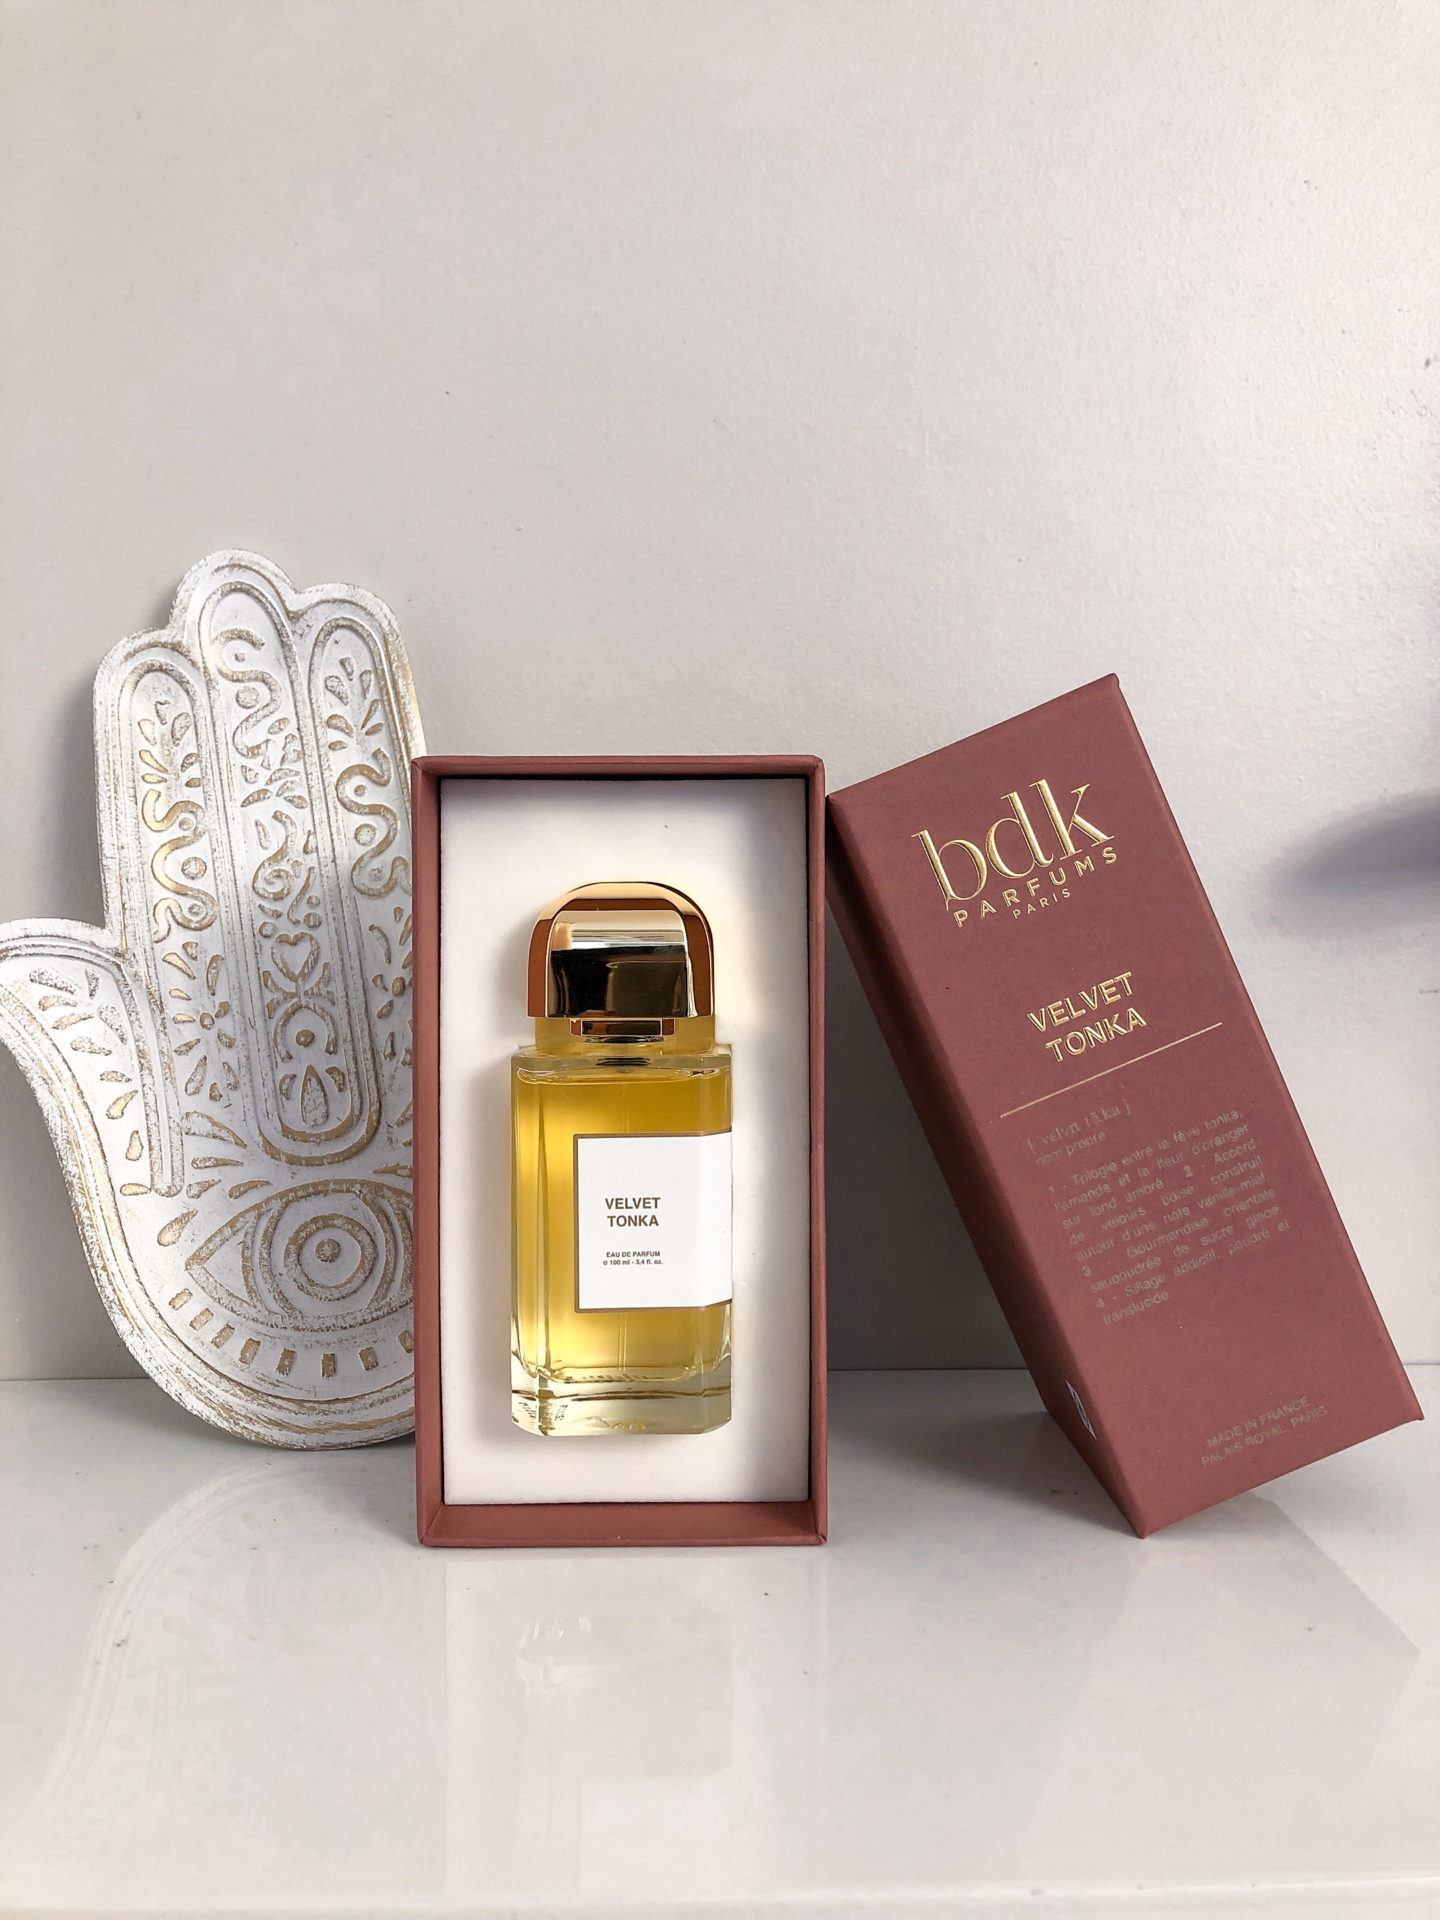 bdk parfums velvet tonka fragrance paris 02